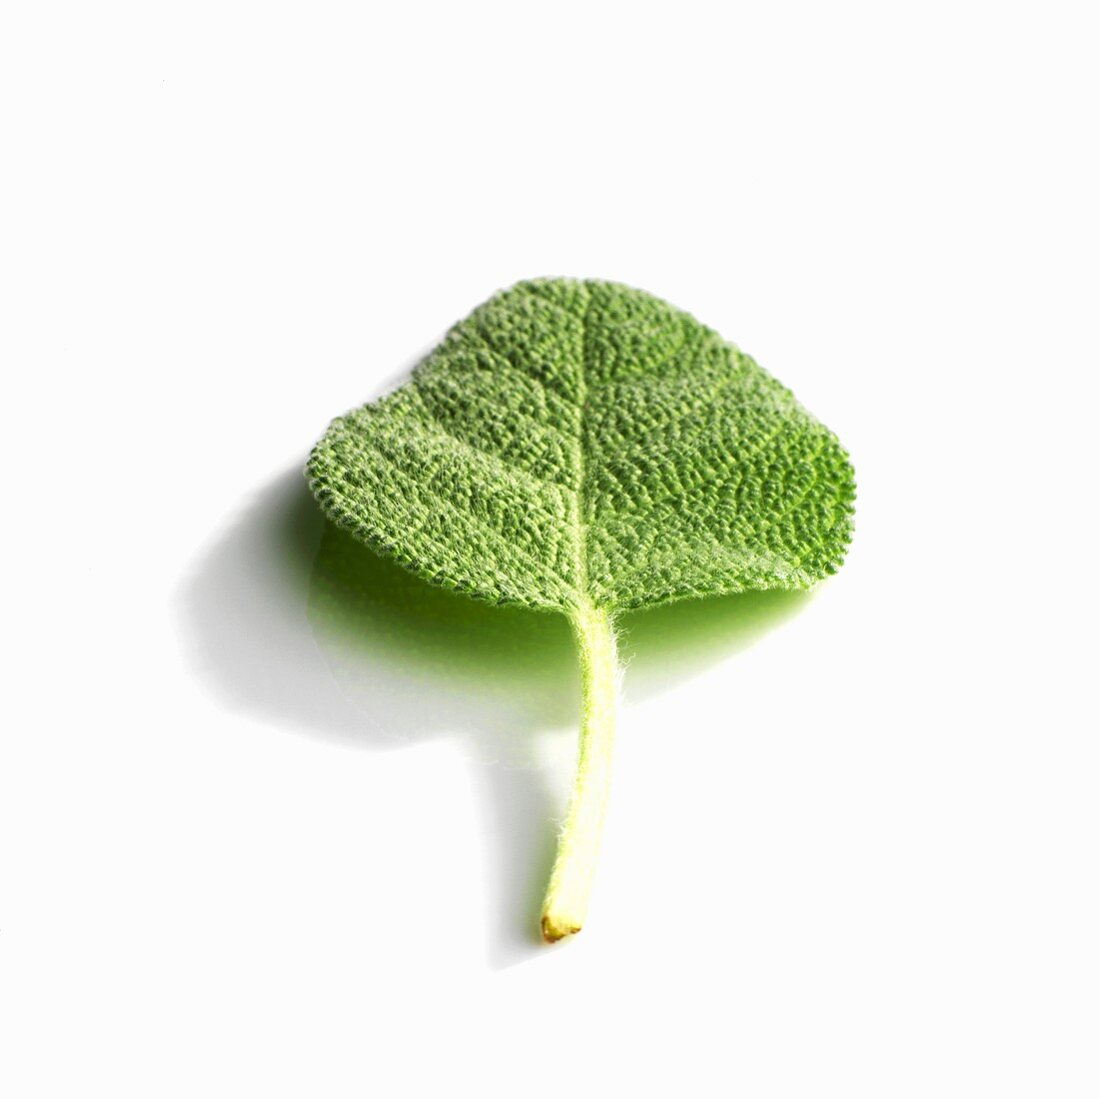 A sage leaf